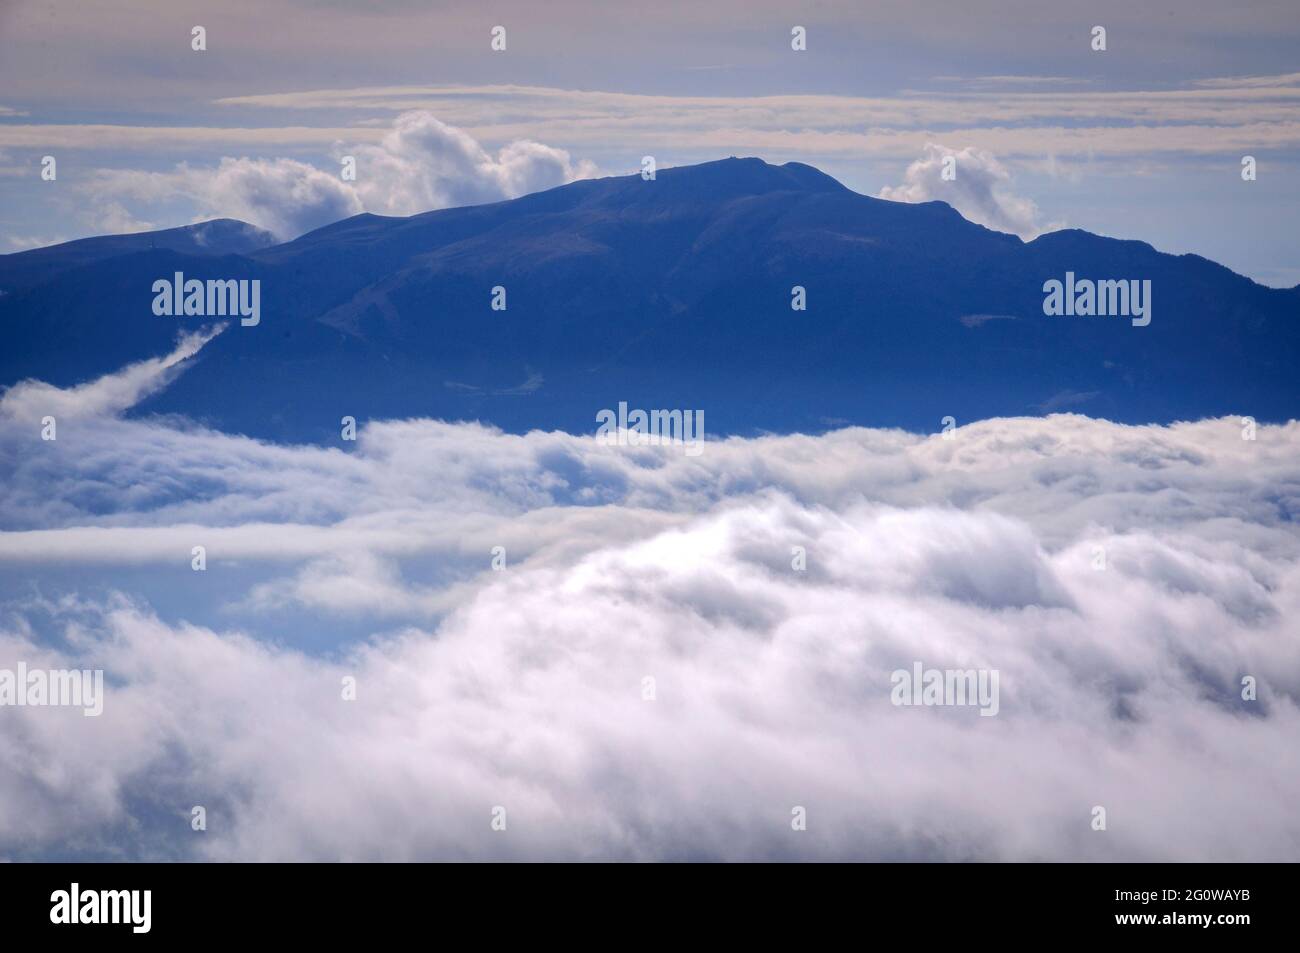 Nebbia in fondo alla valle della Cerdanya, vista dal circo Engorgs. Sullo sfondo, la cima Tosa d'Alp, Cerdanya, Catalogna, Spagna, Pirenei Foto Stock